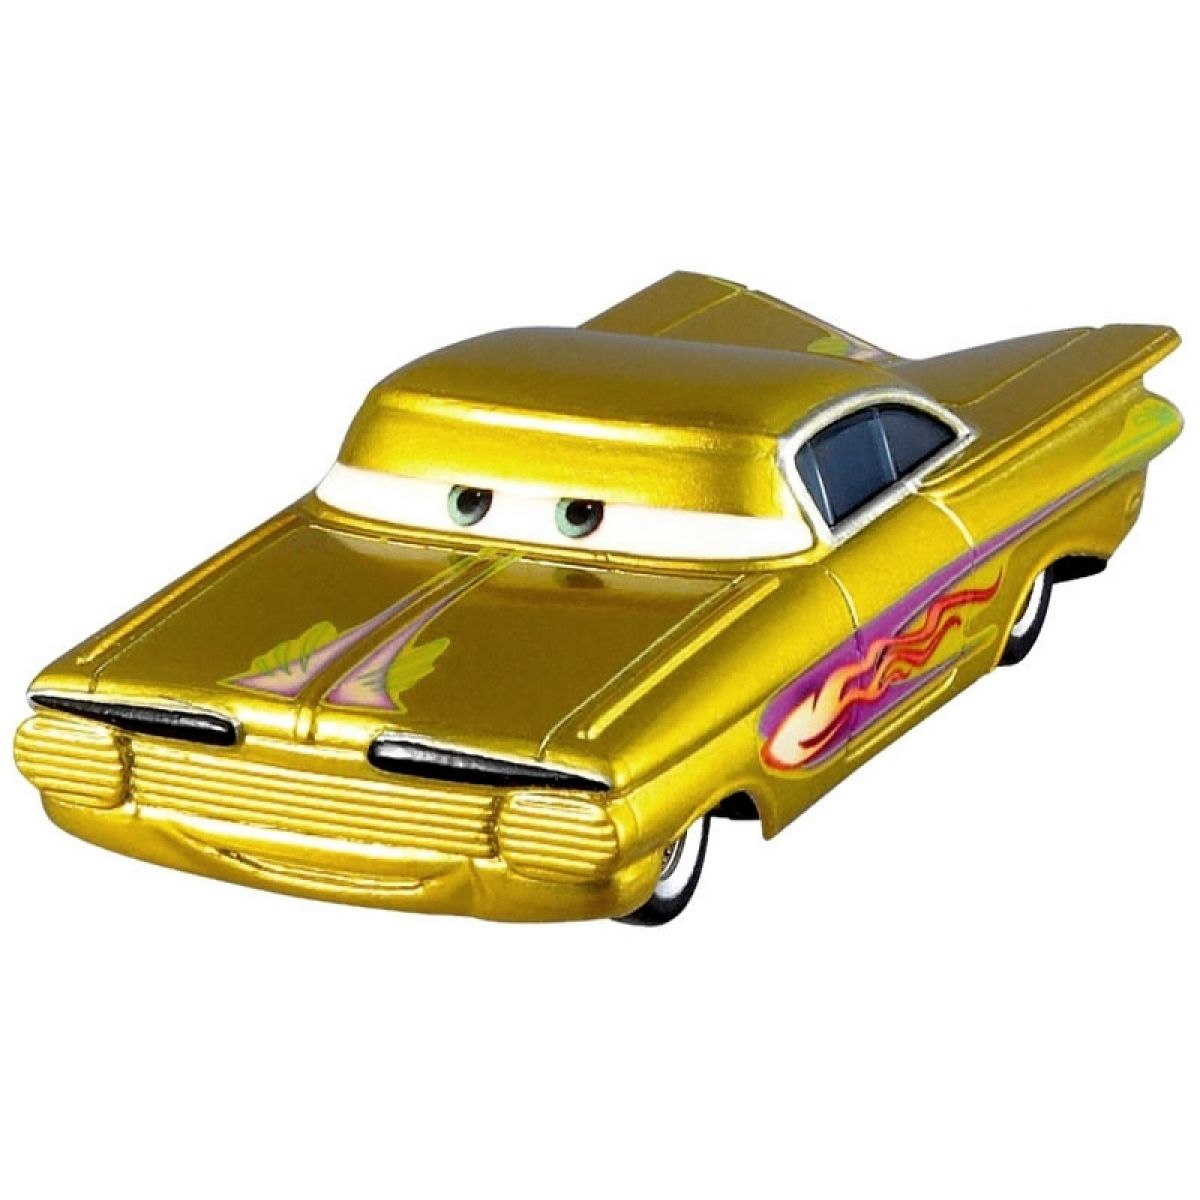 Cars 2 Auta Mattel W1938 - Yellow Ramone